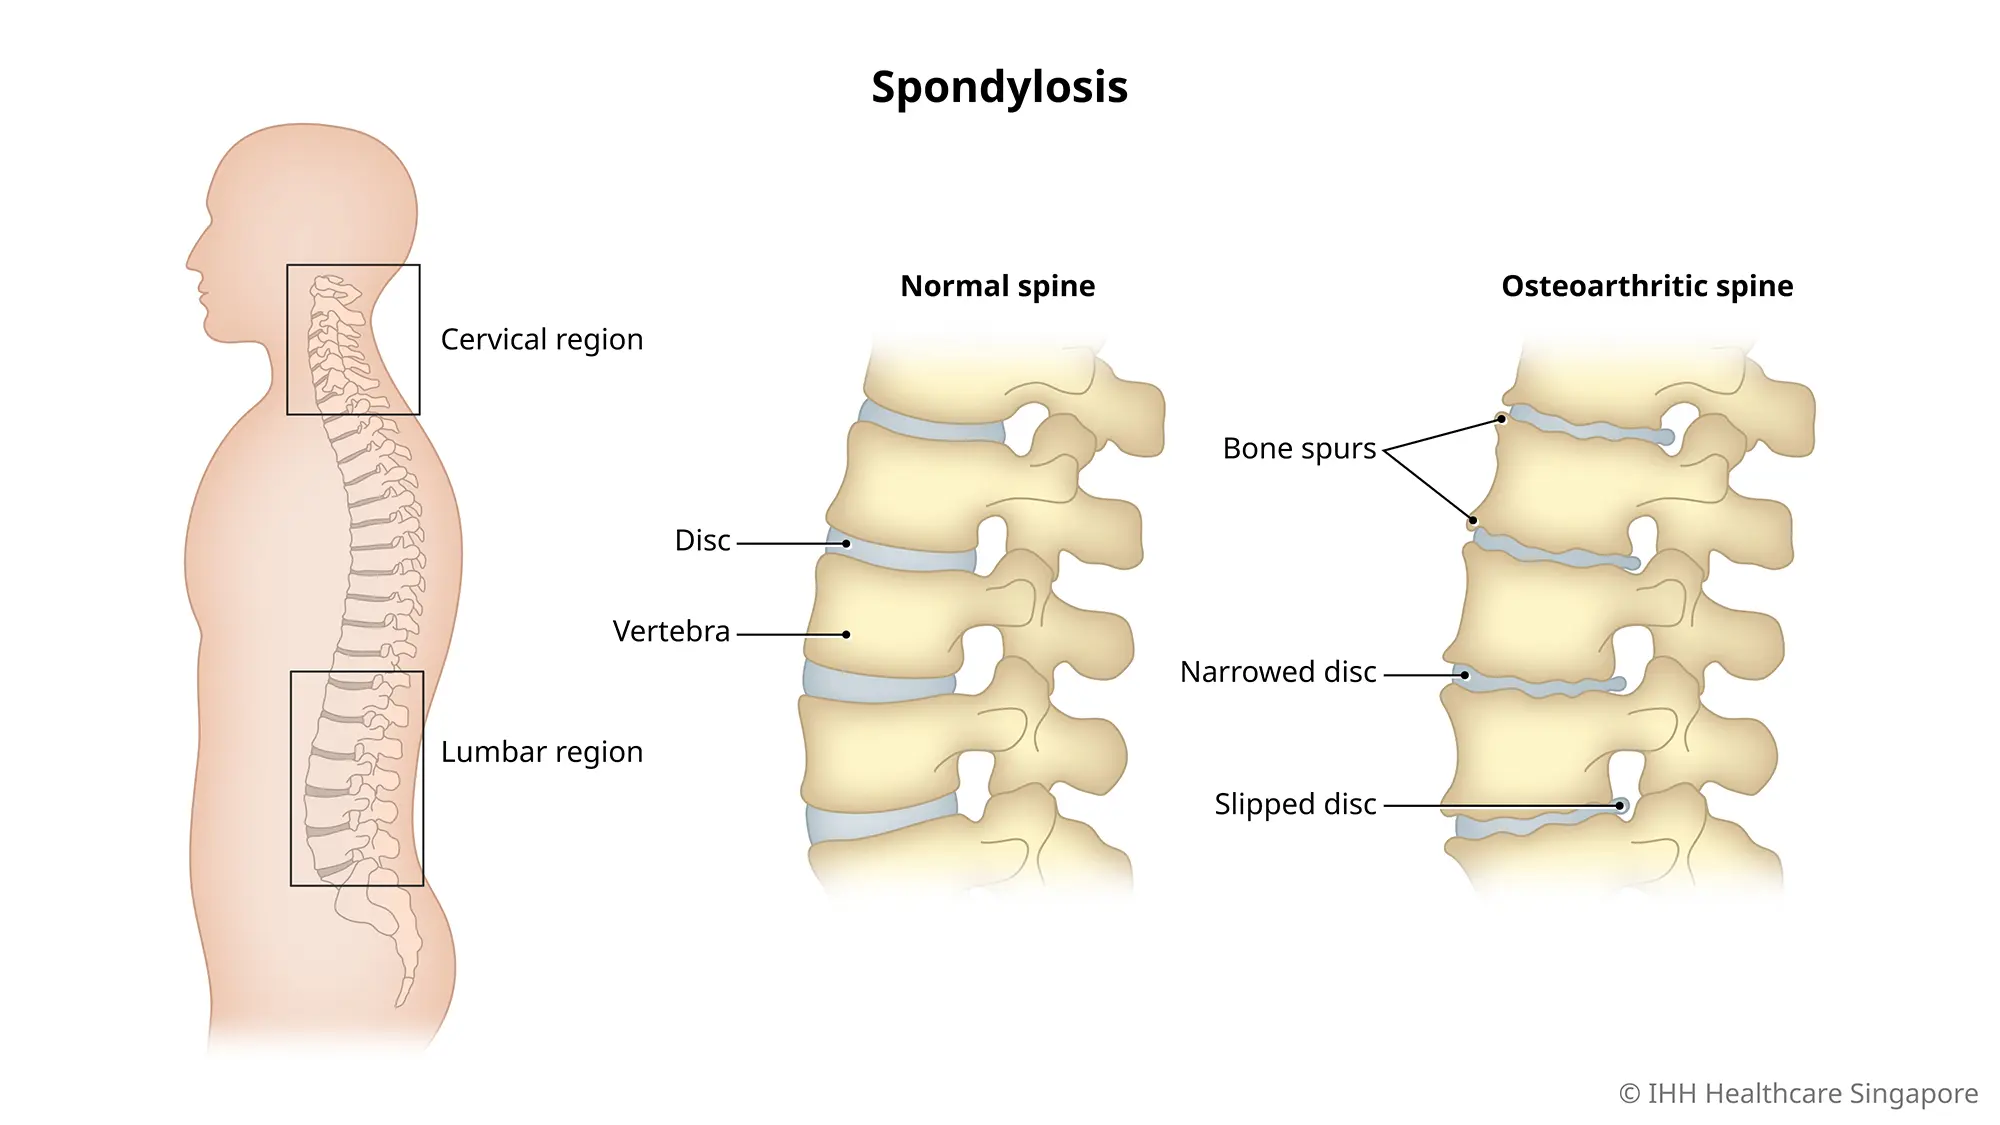 Lumbar Spondylosis